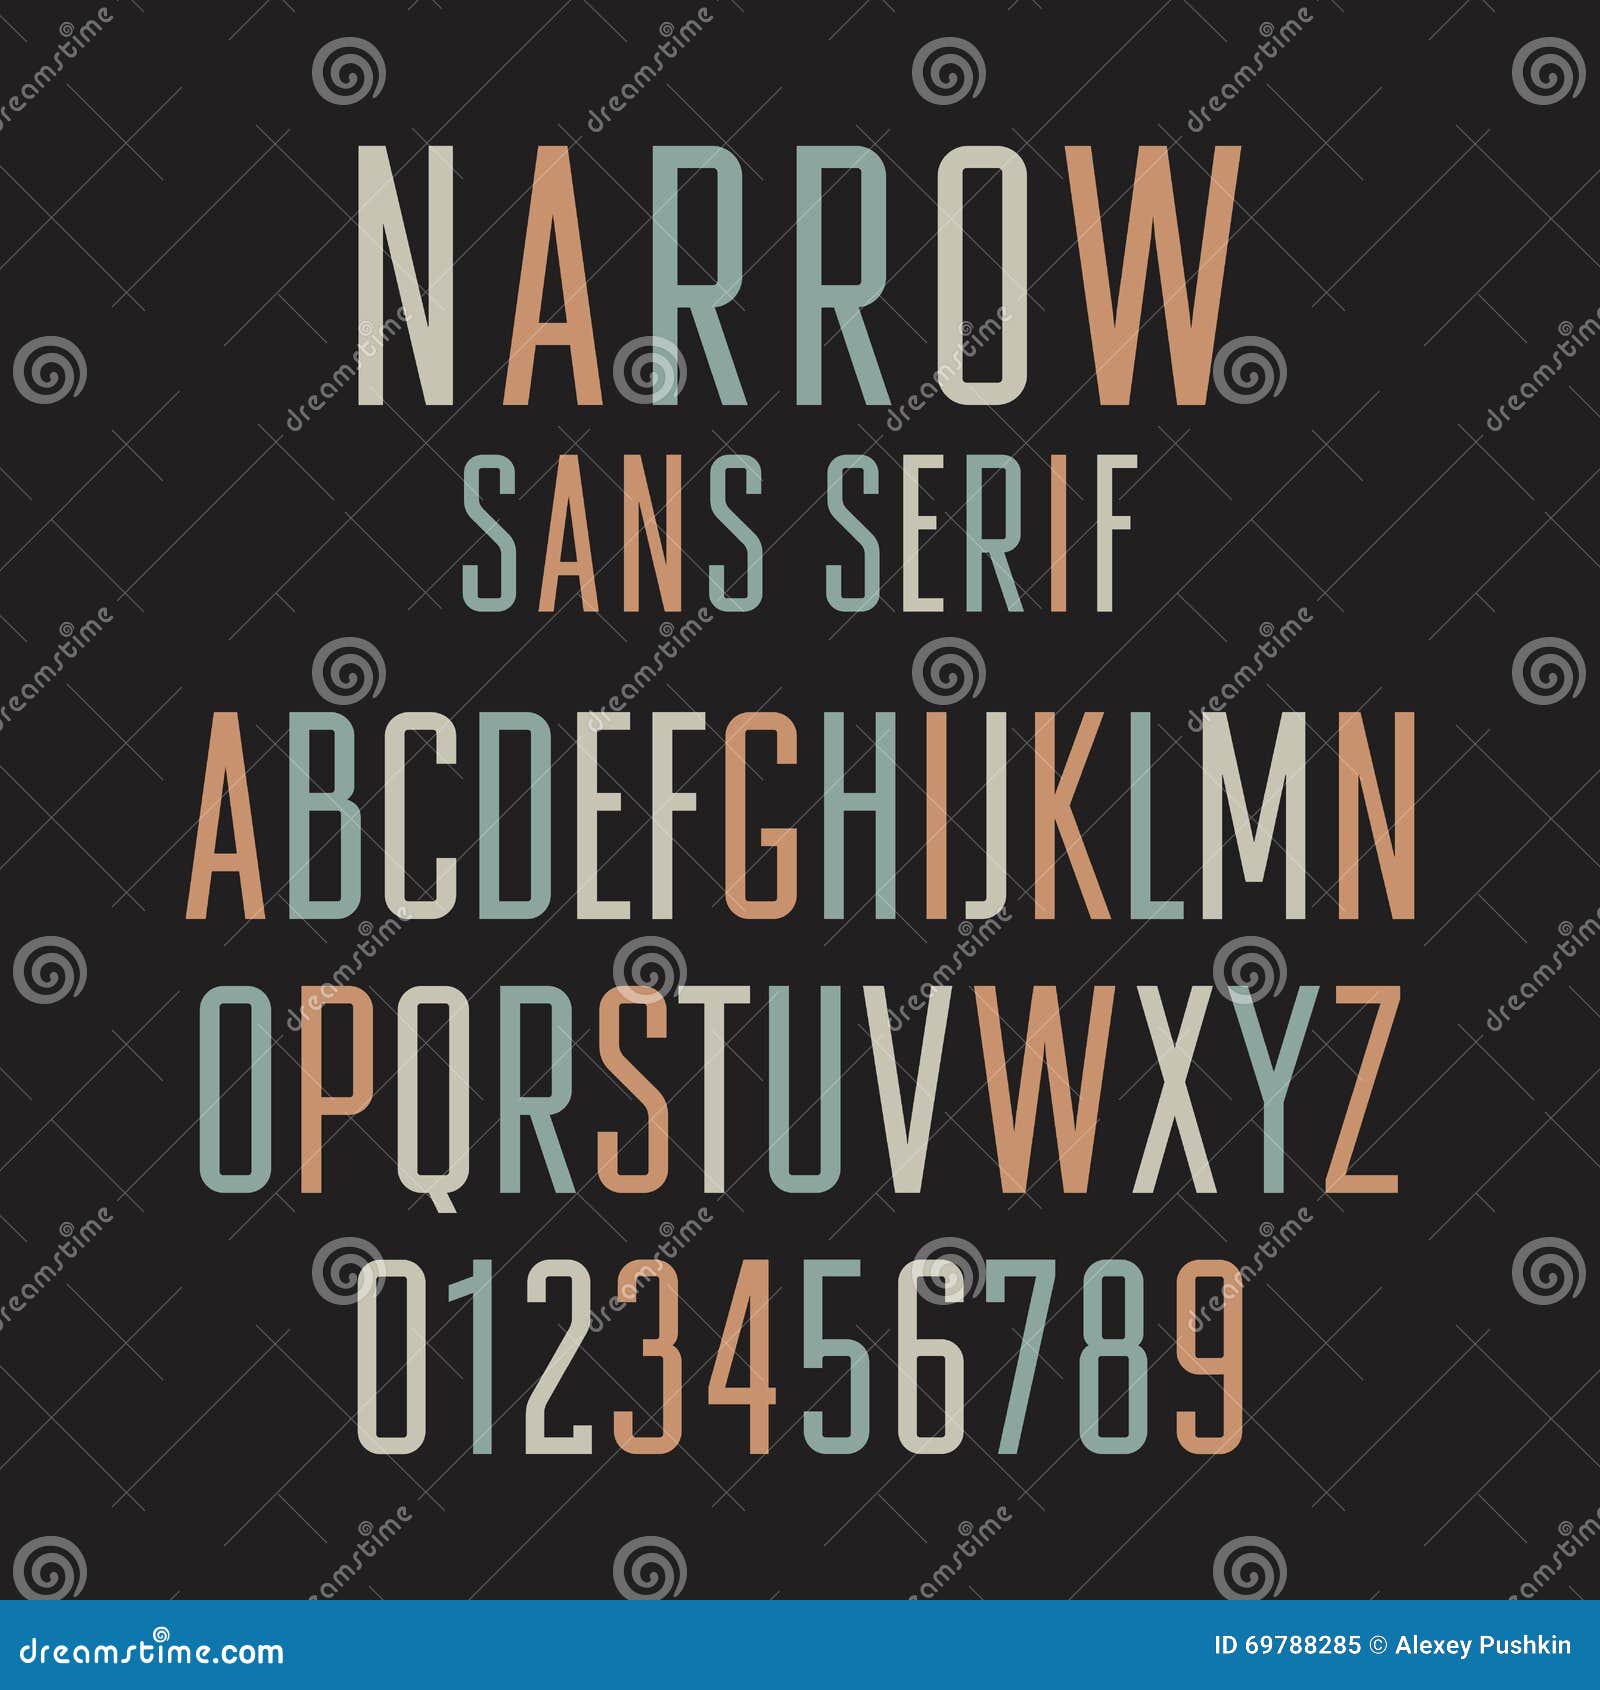 narrow sans serif 001